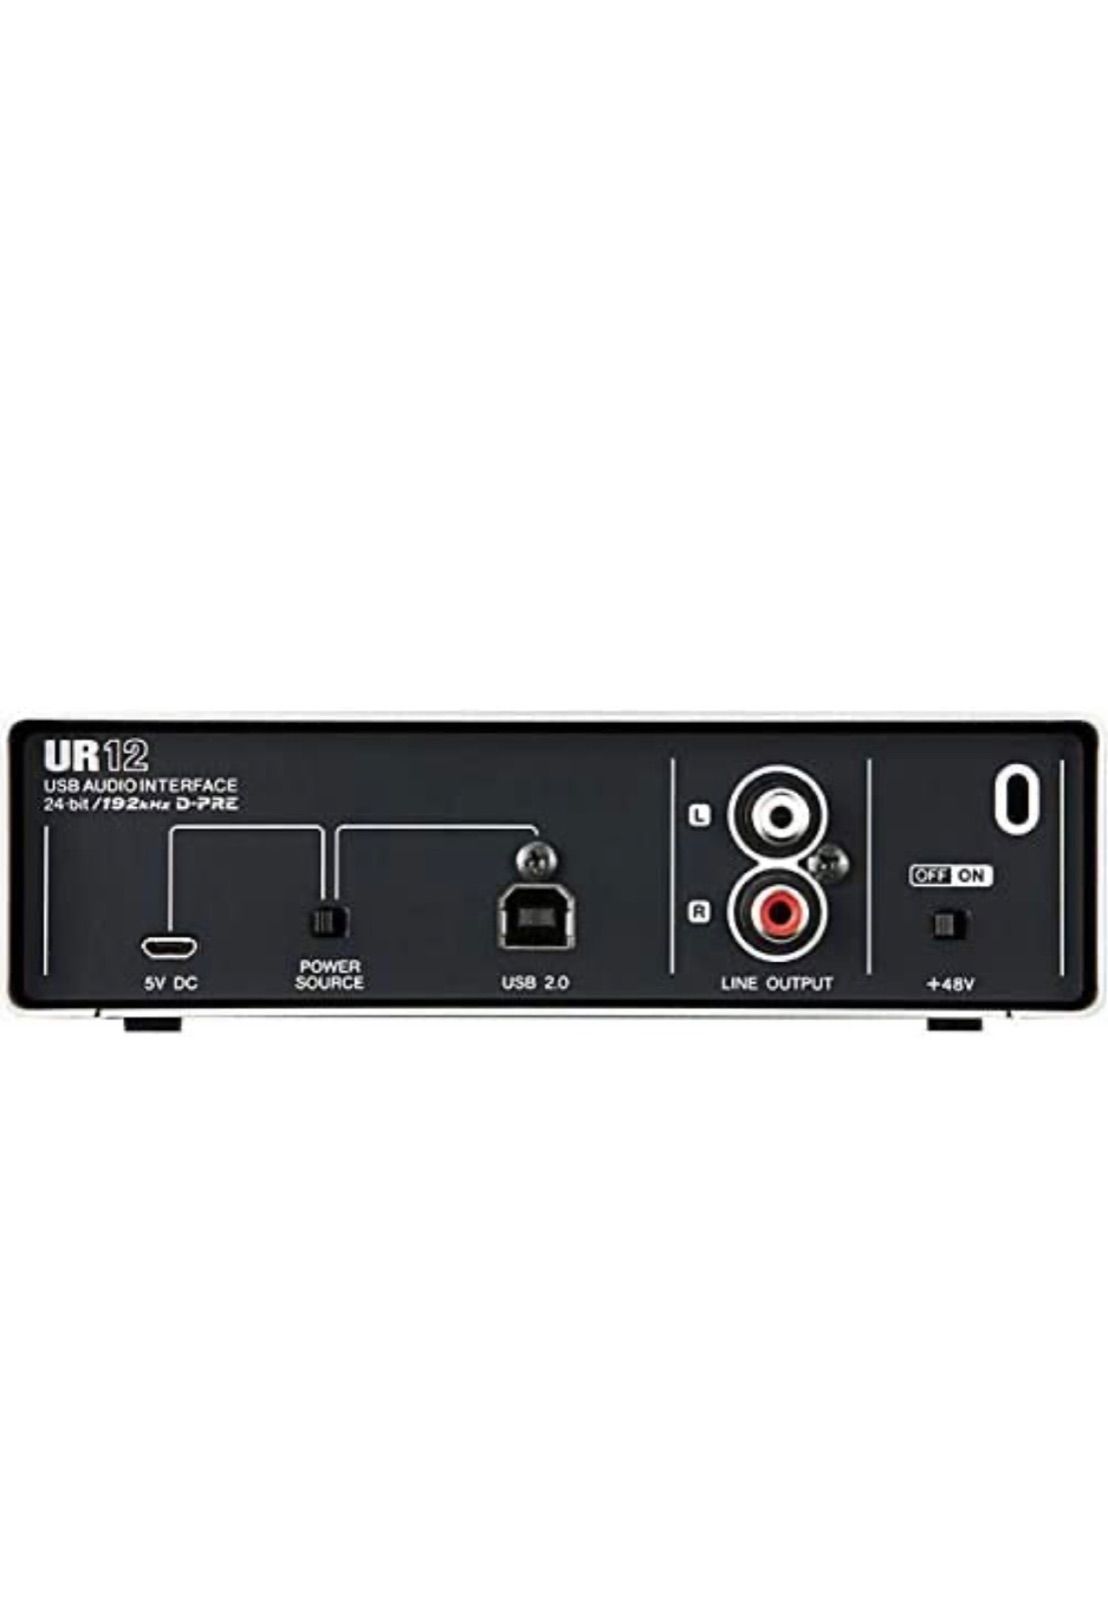 未開封 STEINBERG UR12 USBオーディオインターフェイス - DTM・DAW